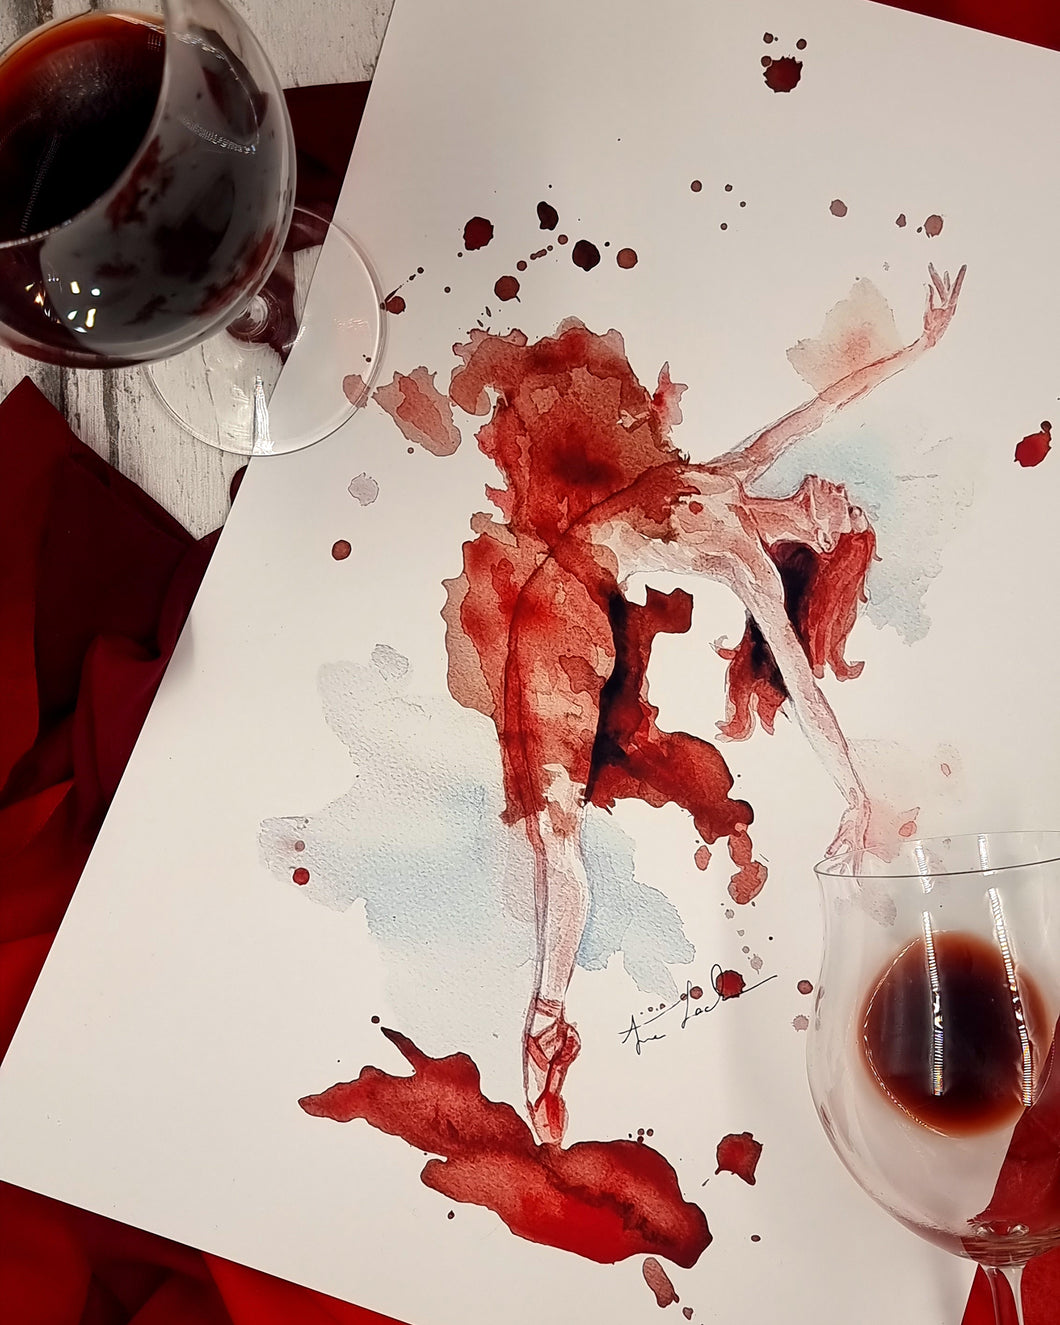 Tänzerin in Wein gemalt - Malerei mit Wein - Tänzerin Tania